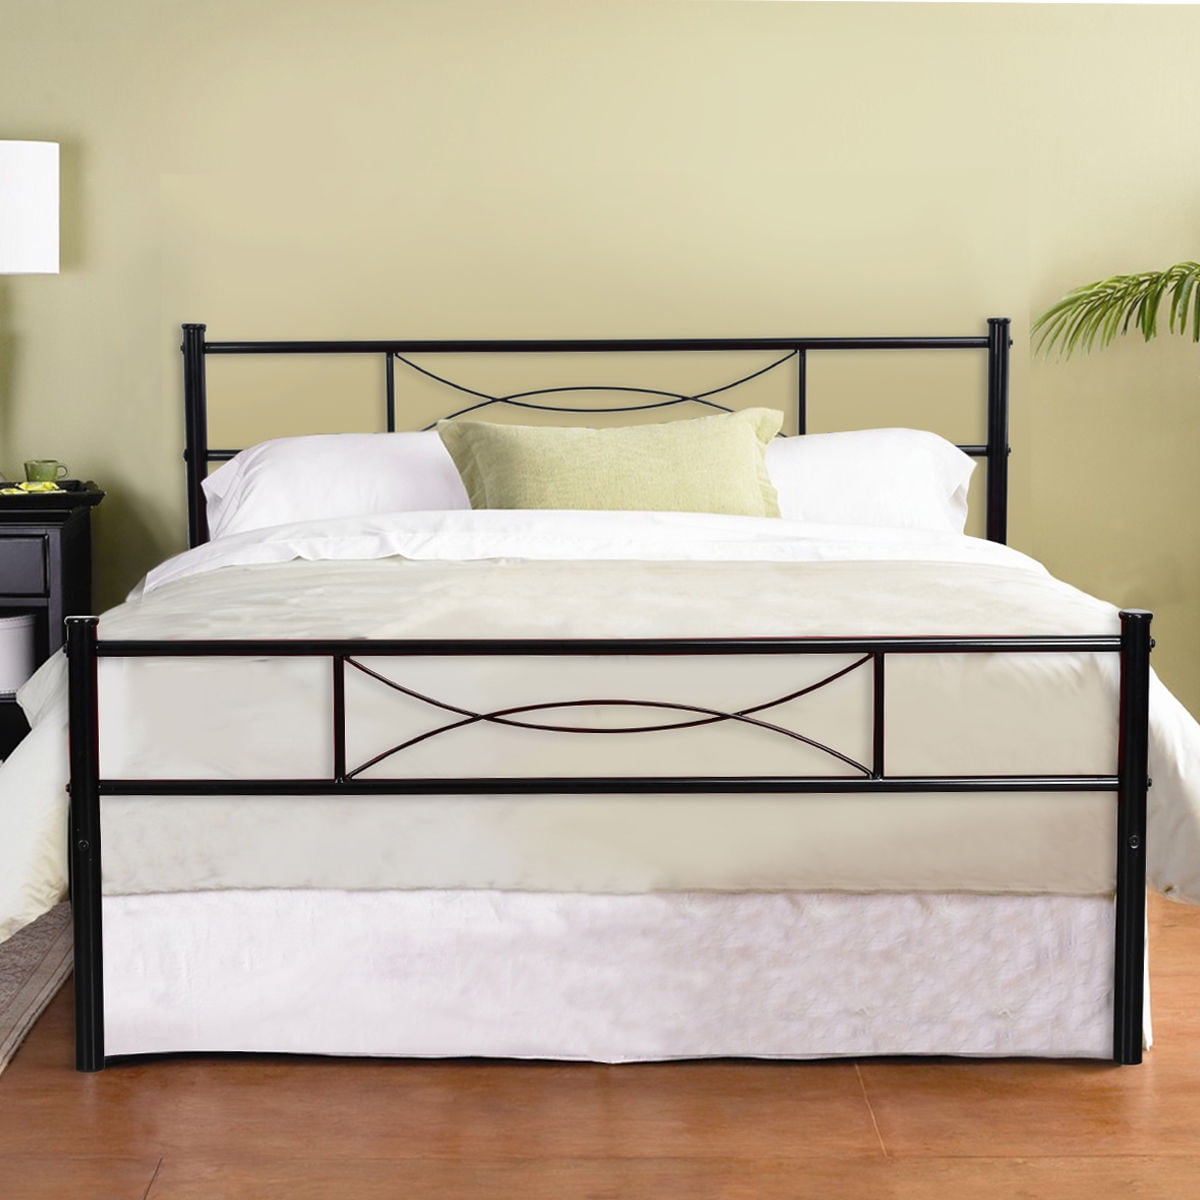 Cheerwing Premium Metal Bed Platform, Sears Metal Bed Frame